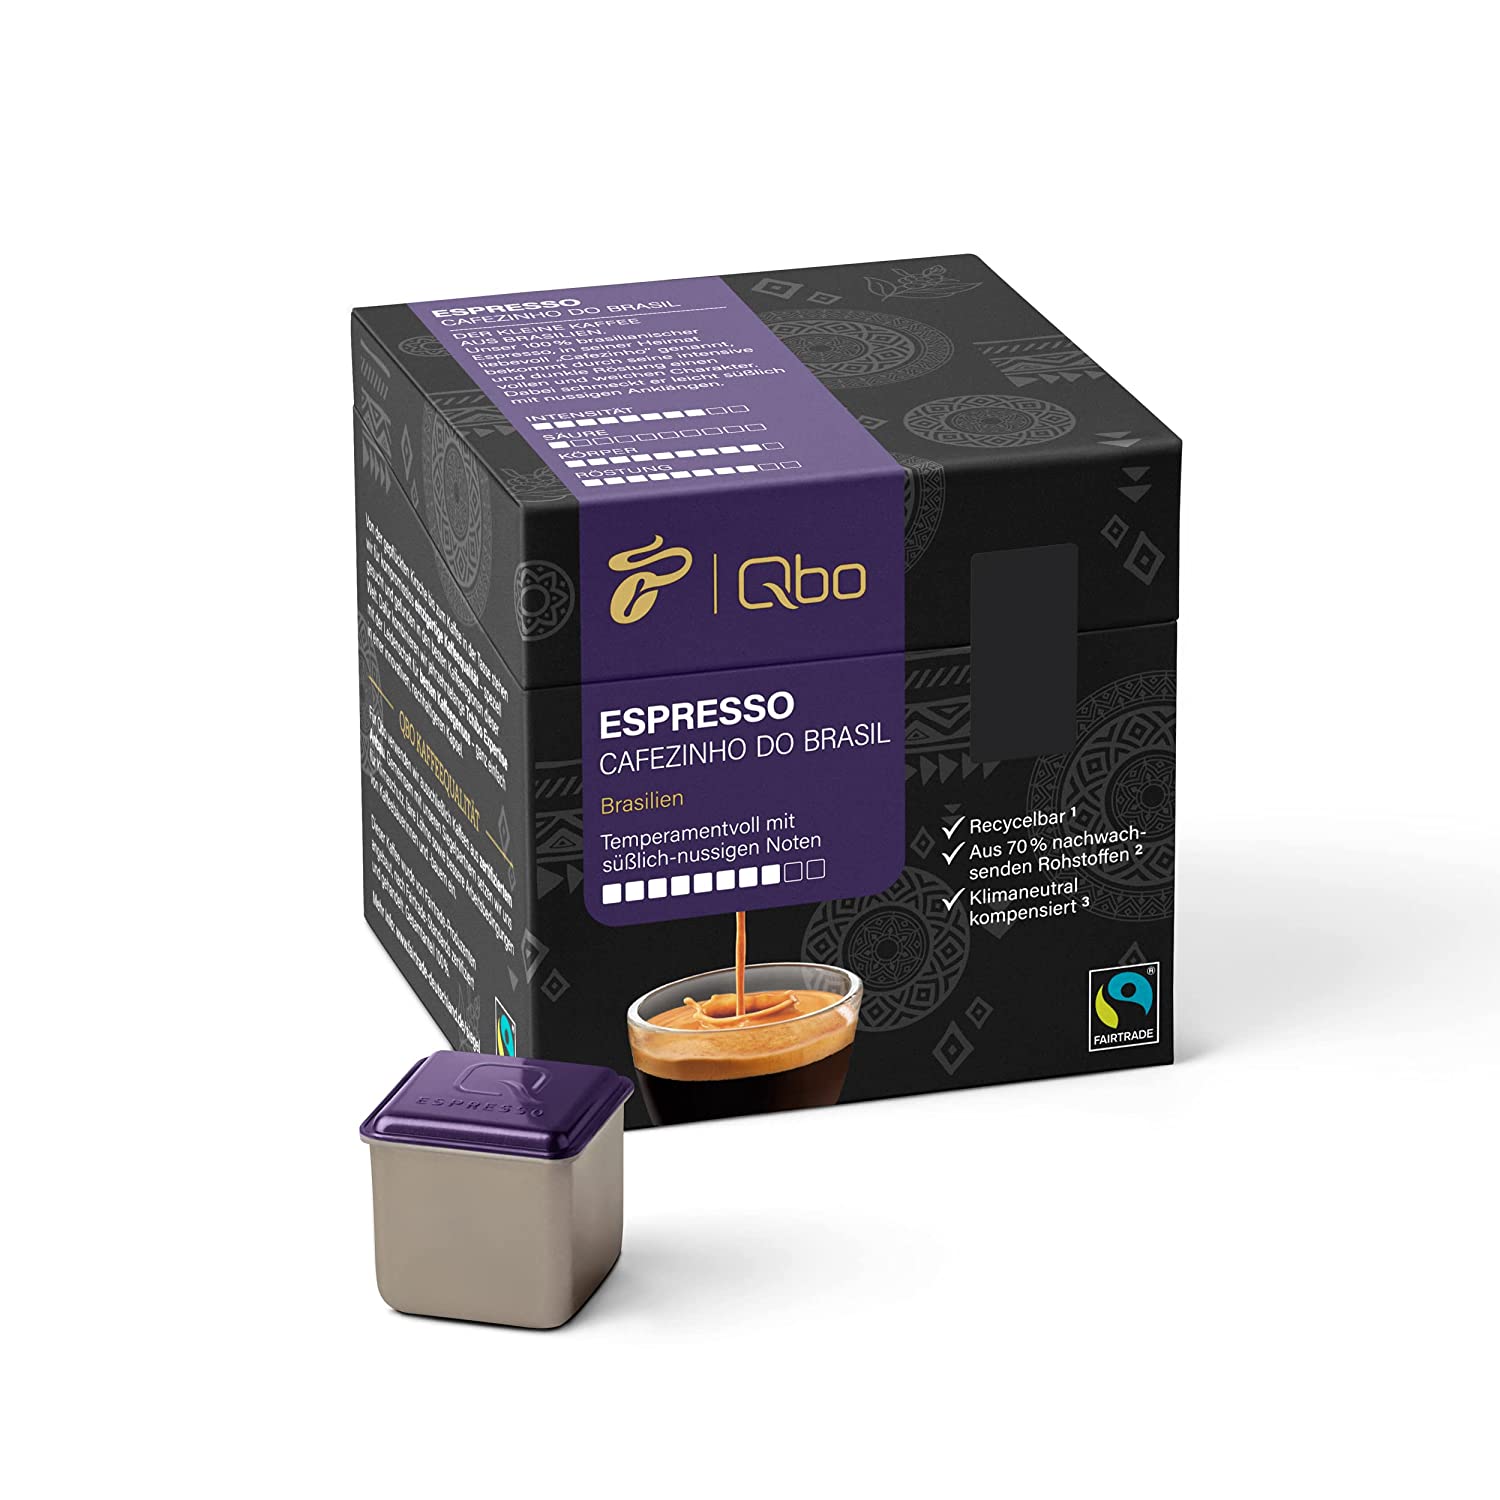 Tchibo Qbo Espresso Cafezinho do Brasil Premium Kaffeekapseln, 27 Stück (Espresso, Intensität 8/10, temperamentvoll & nussig), nachhaltig, aus 70% nachwachsenden Rohstoffen & klimaneutral kompensiert